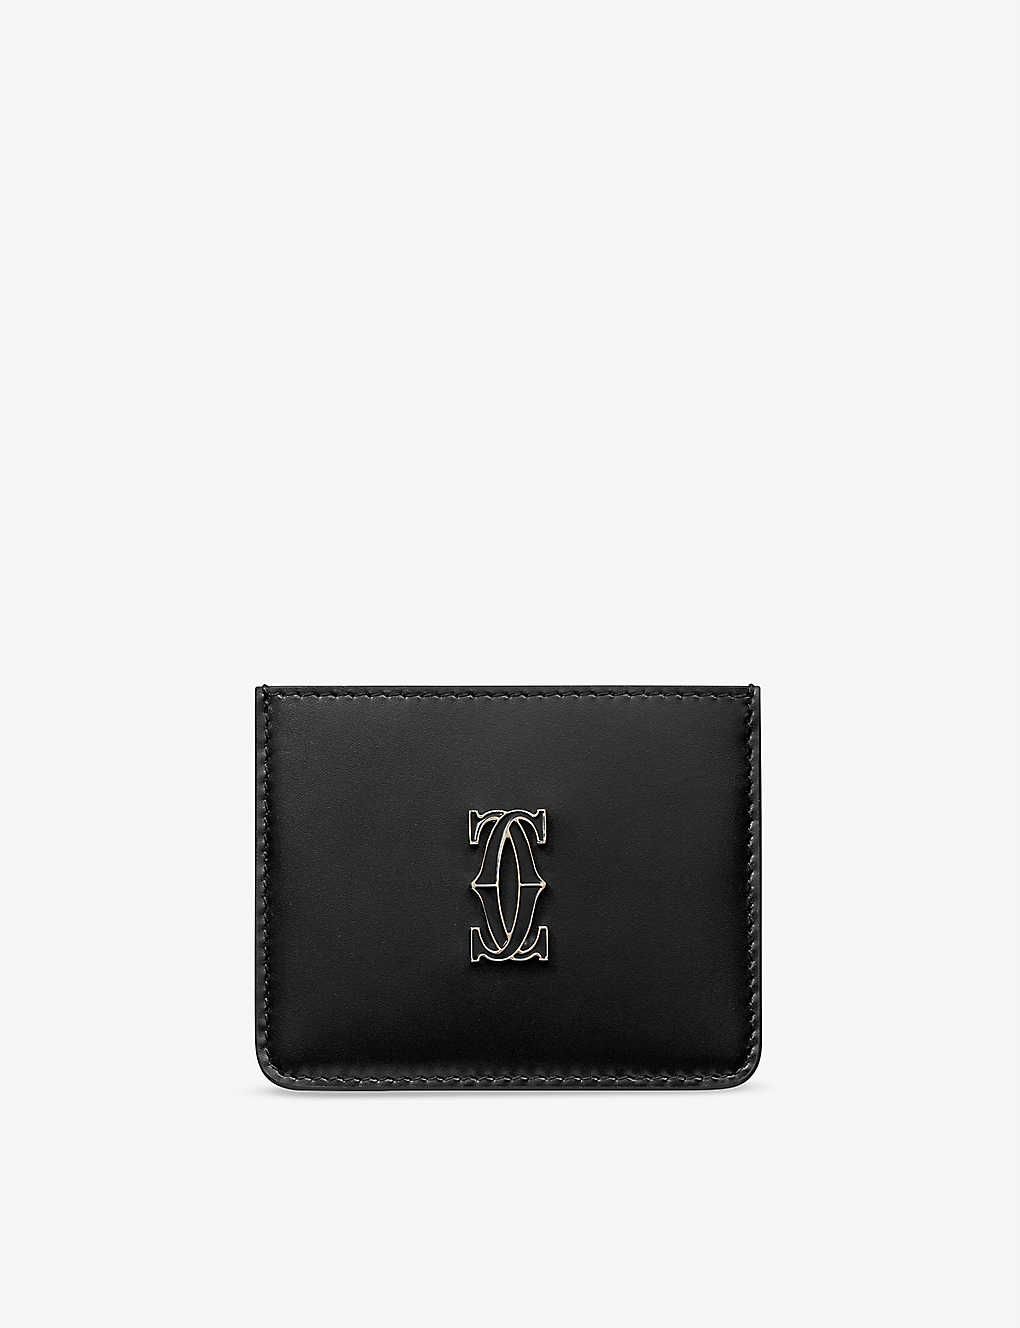 Double C de Cartier leather card holder | Selfridges